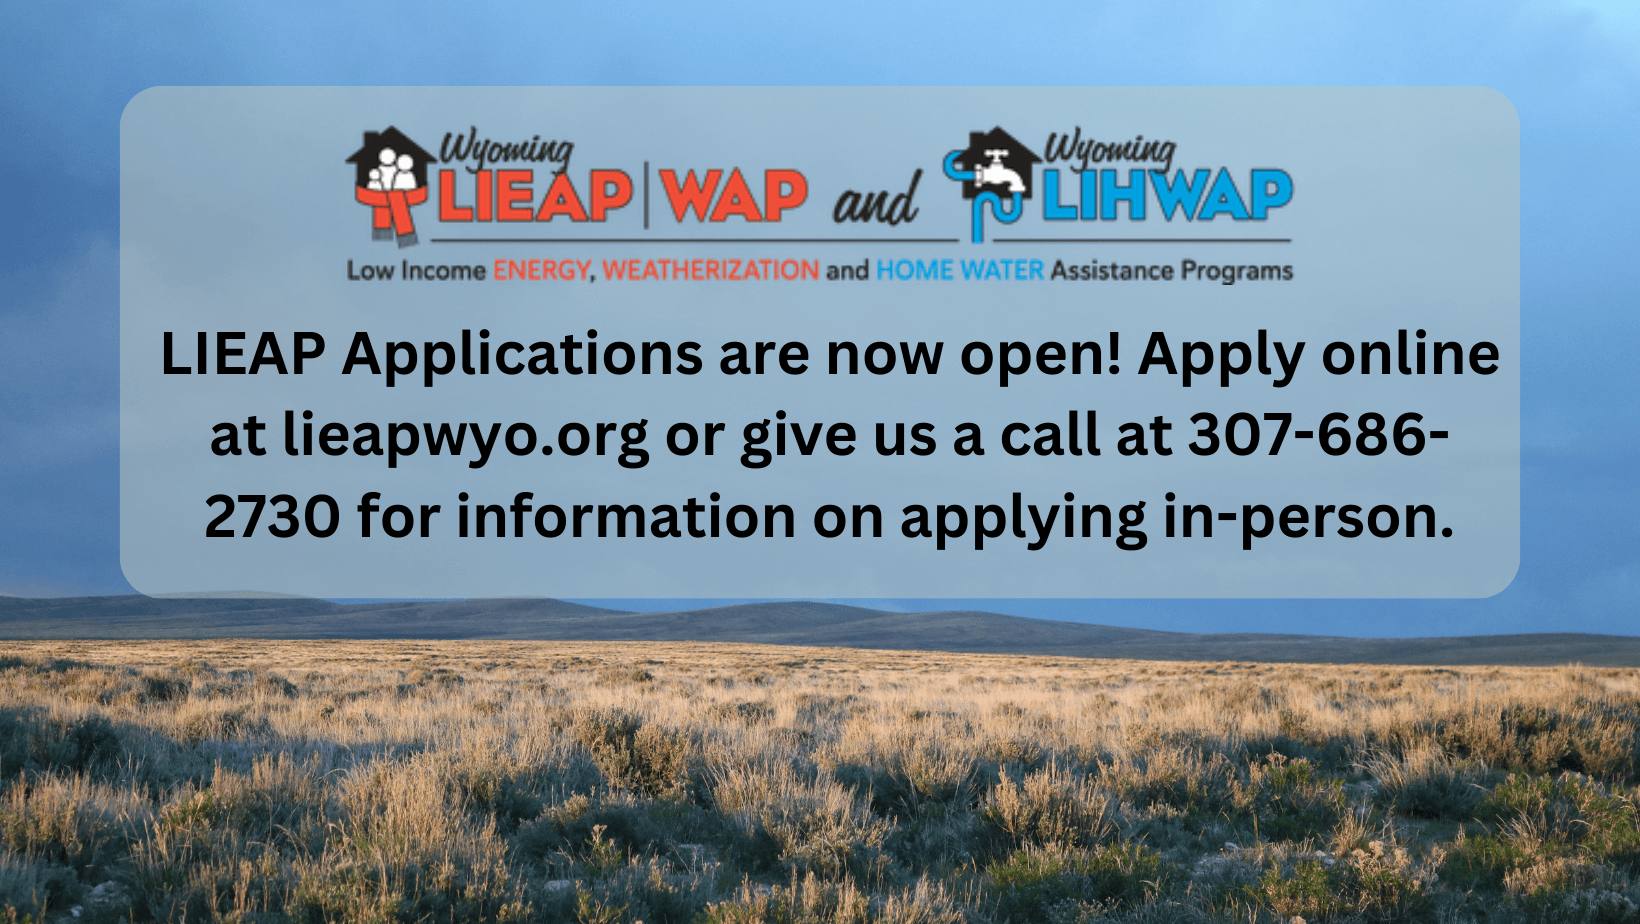 LIEAP Applications are open!